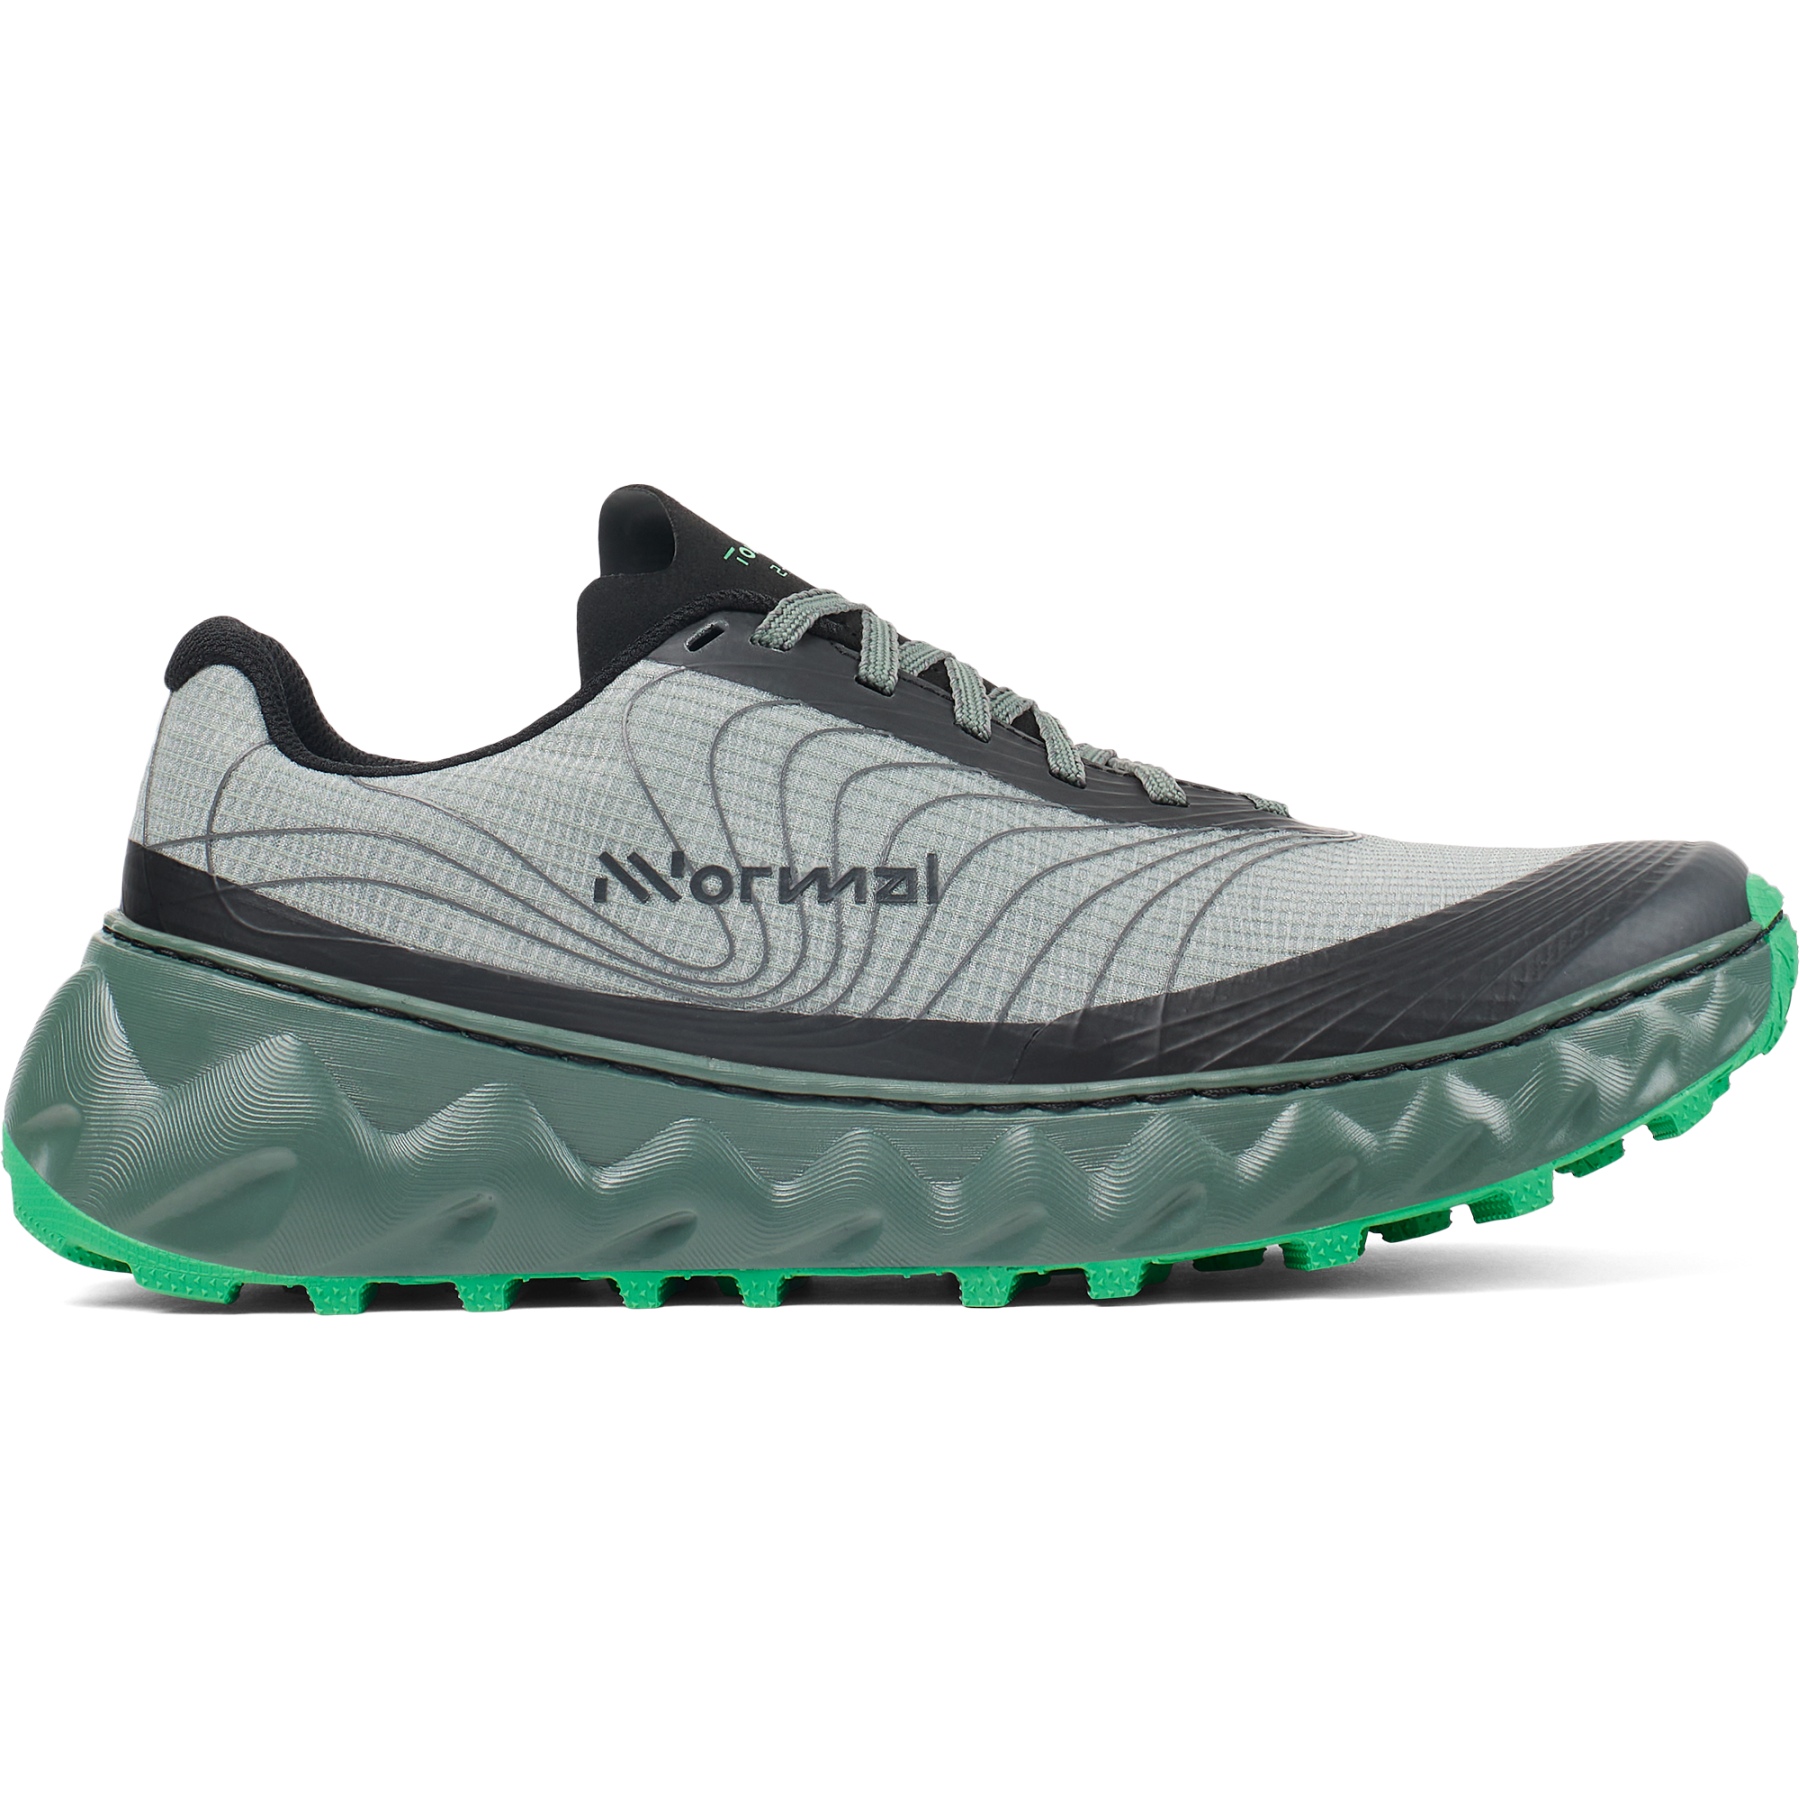 Productfoto van NNormal Tomir 2.0 Trail Running Schoenen - Groen